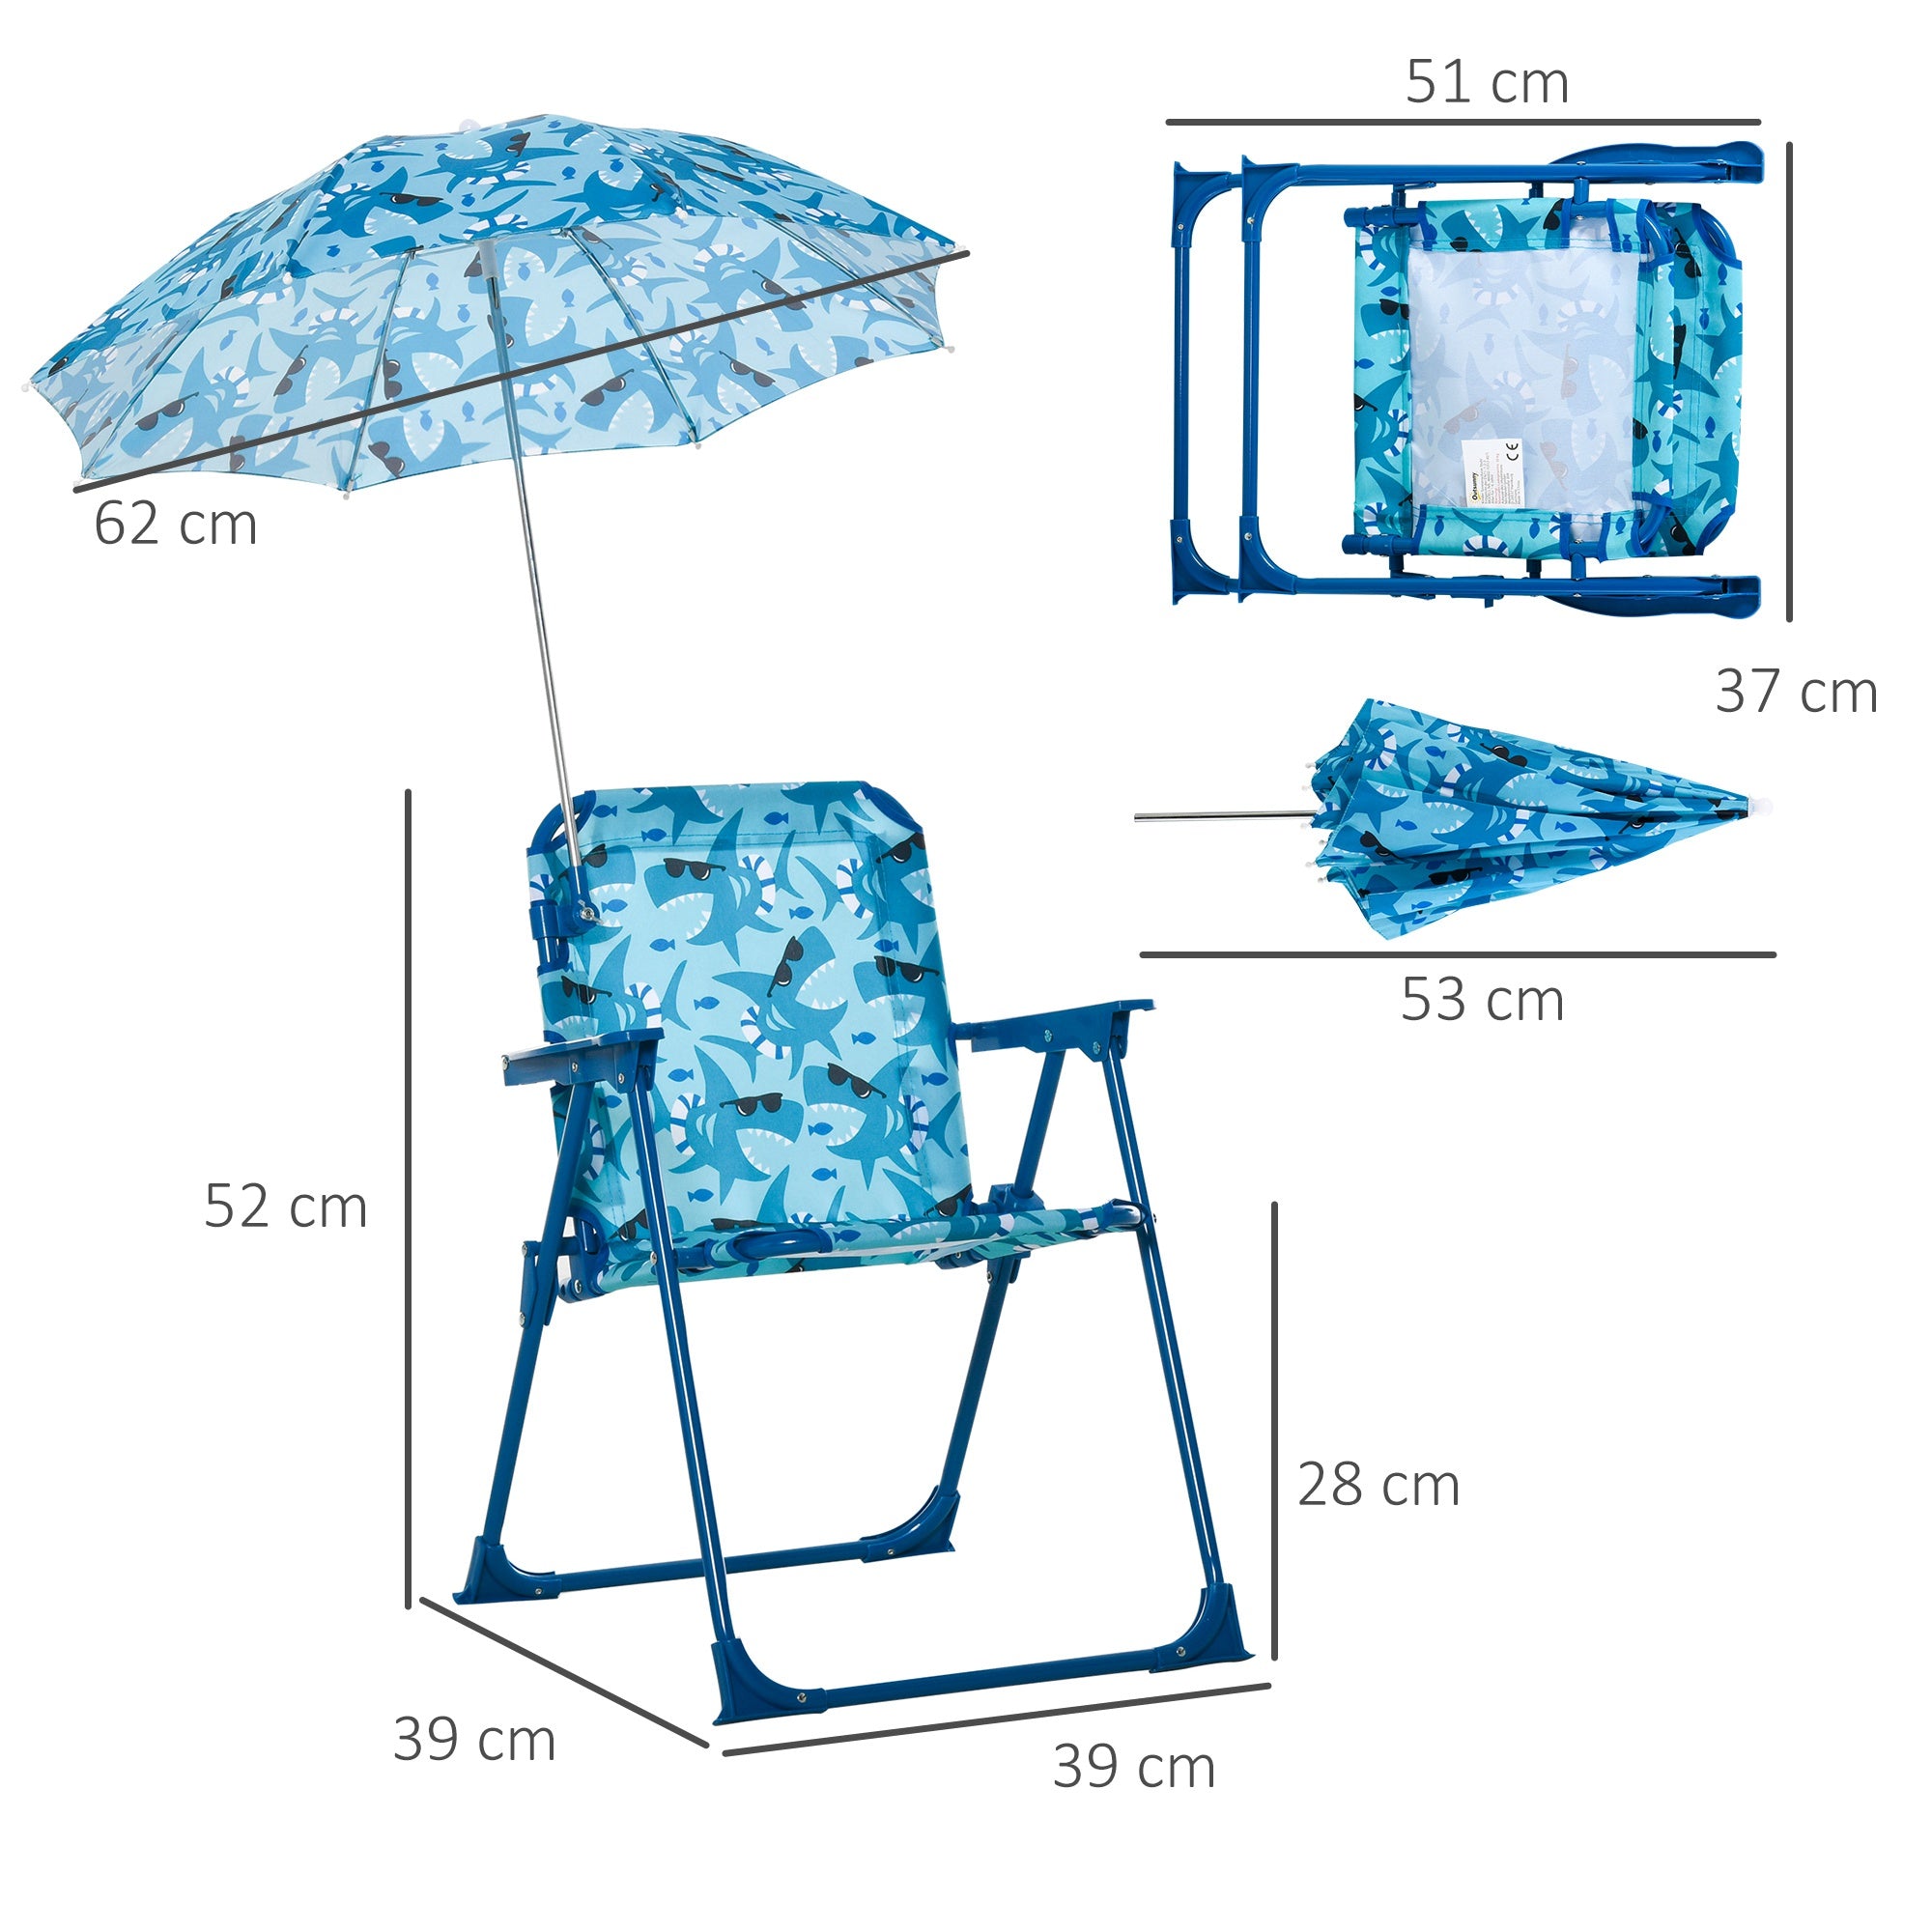 Chaise de plage Galesburg de Nancy - Chaise de camping - Pliable - Avec parasol - Polyester - Bleu